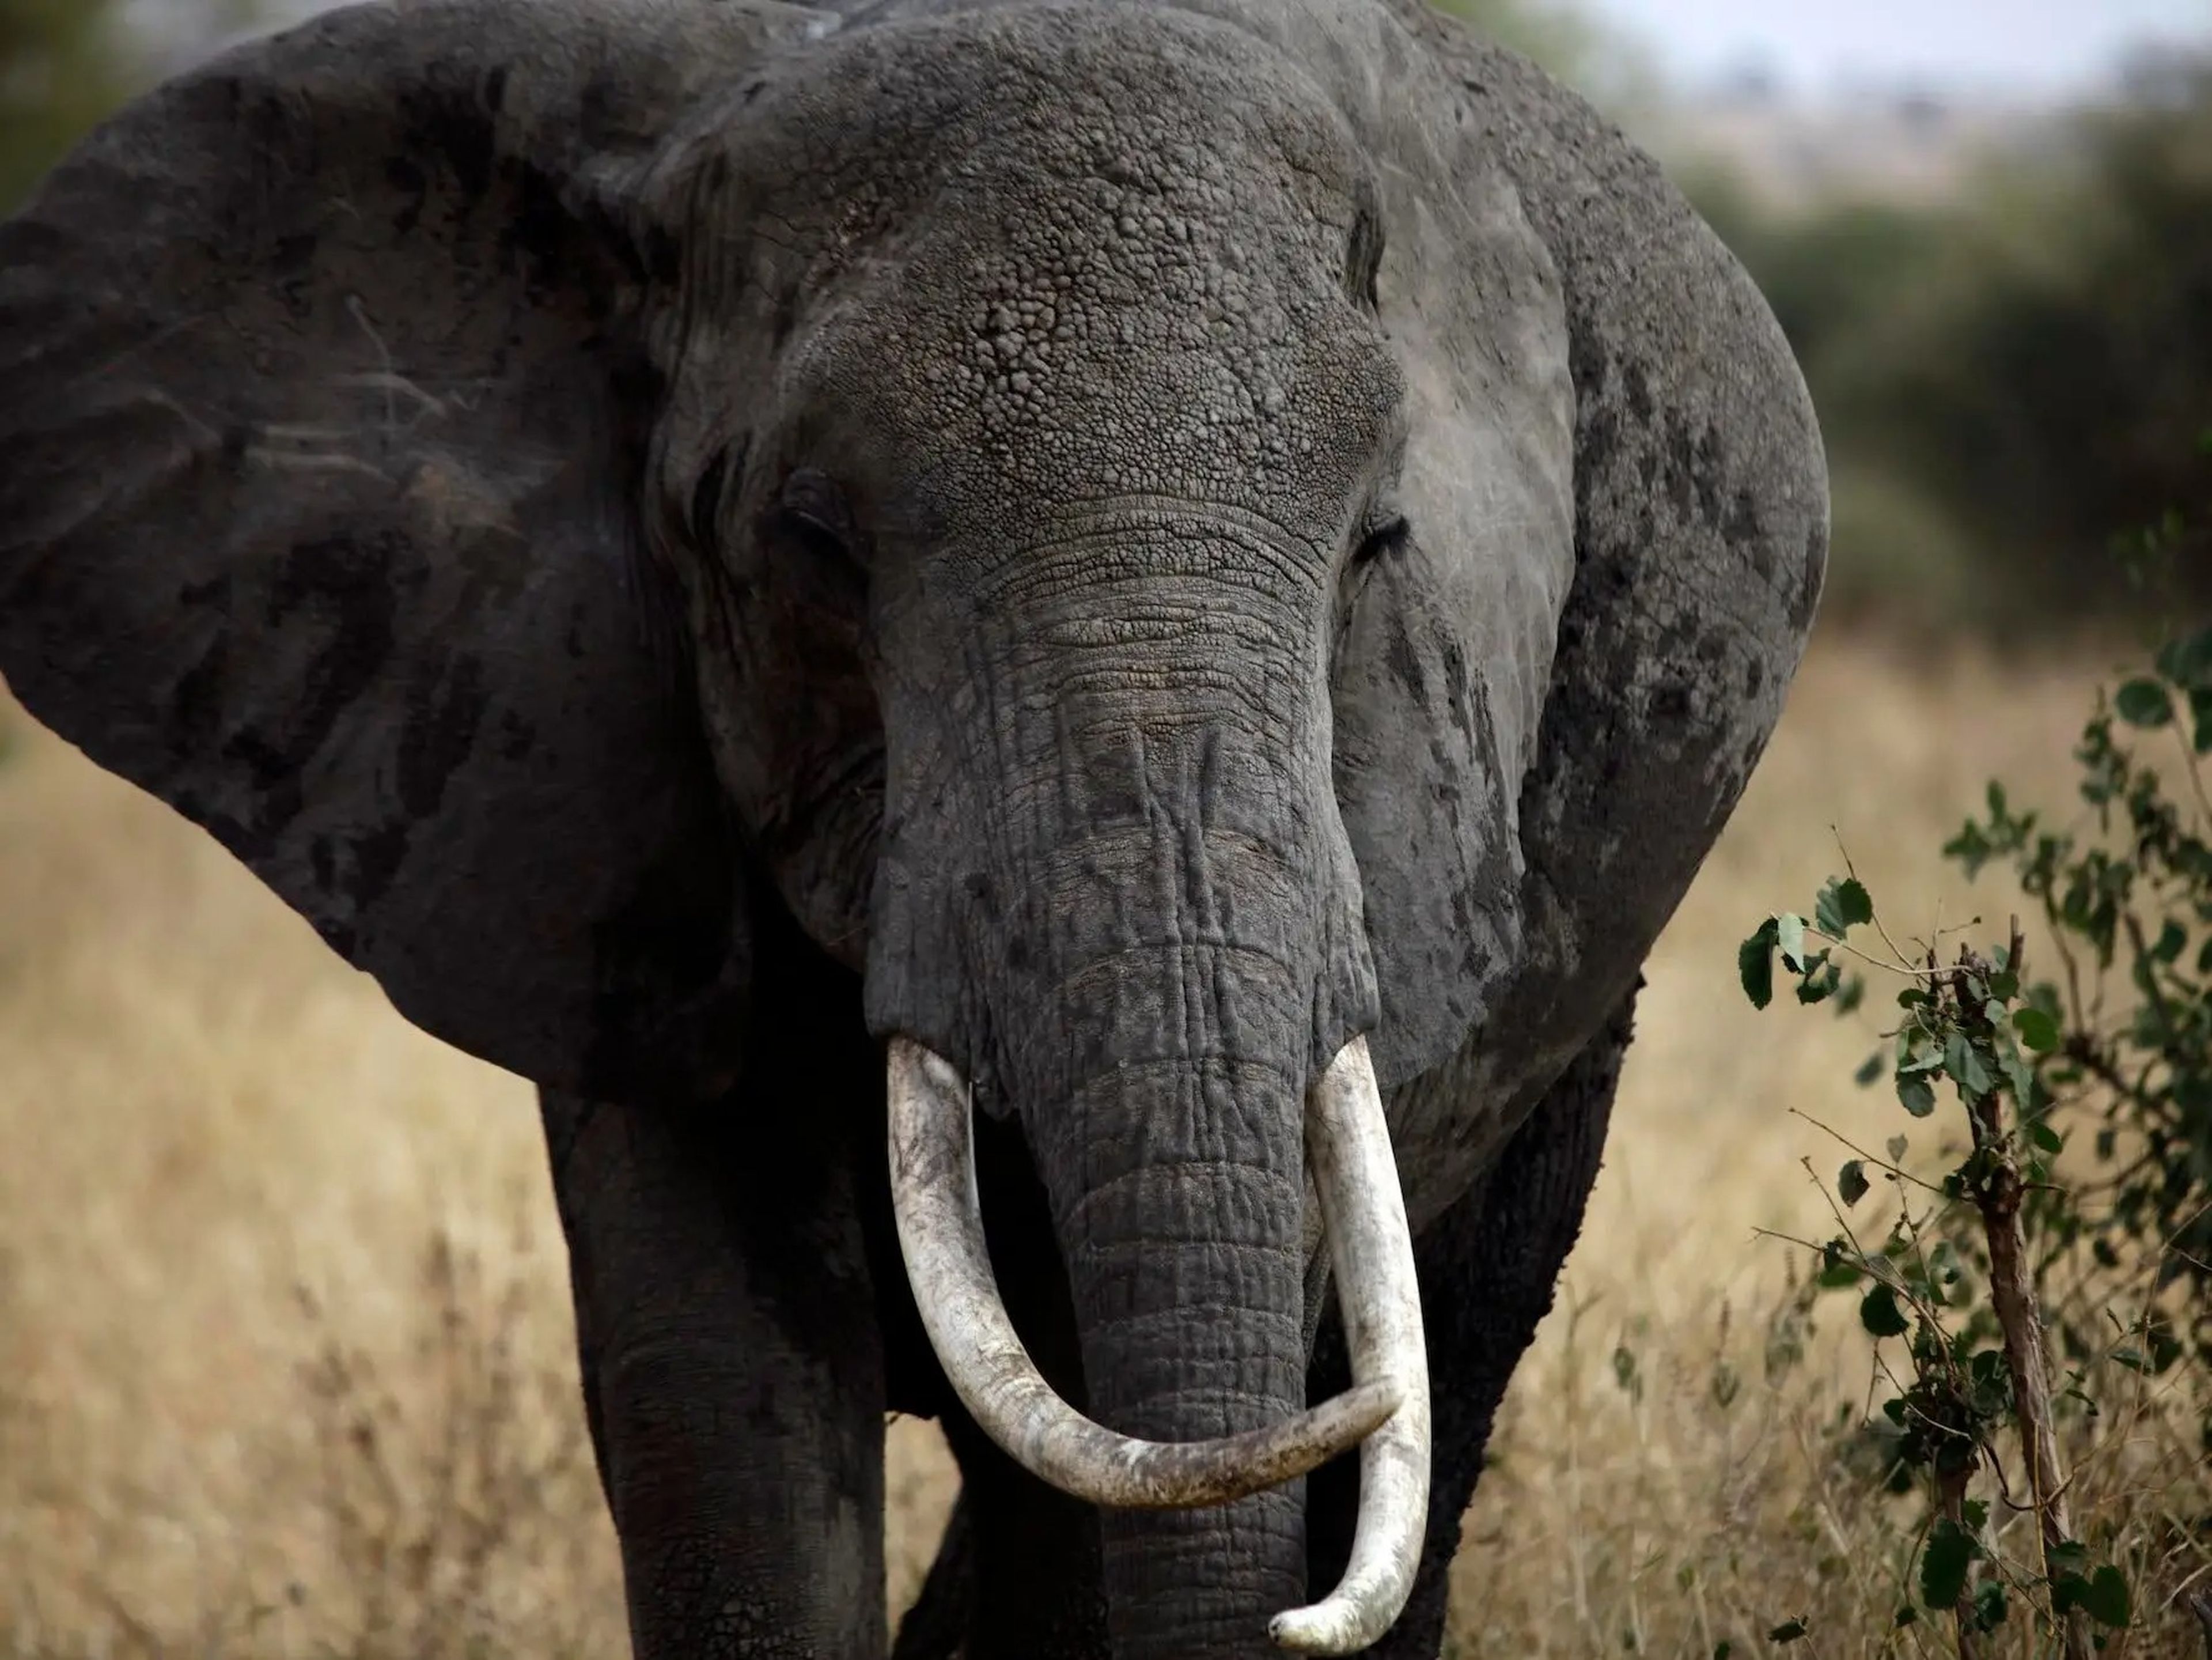 Los elefantes tienen muchas formas de mantenerse frescos, incluido batir sus grandes orejas.